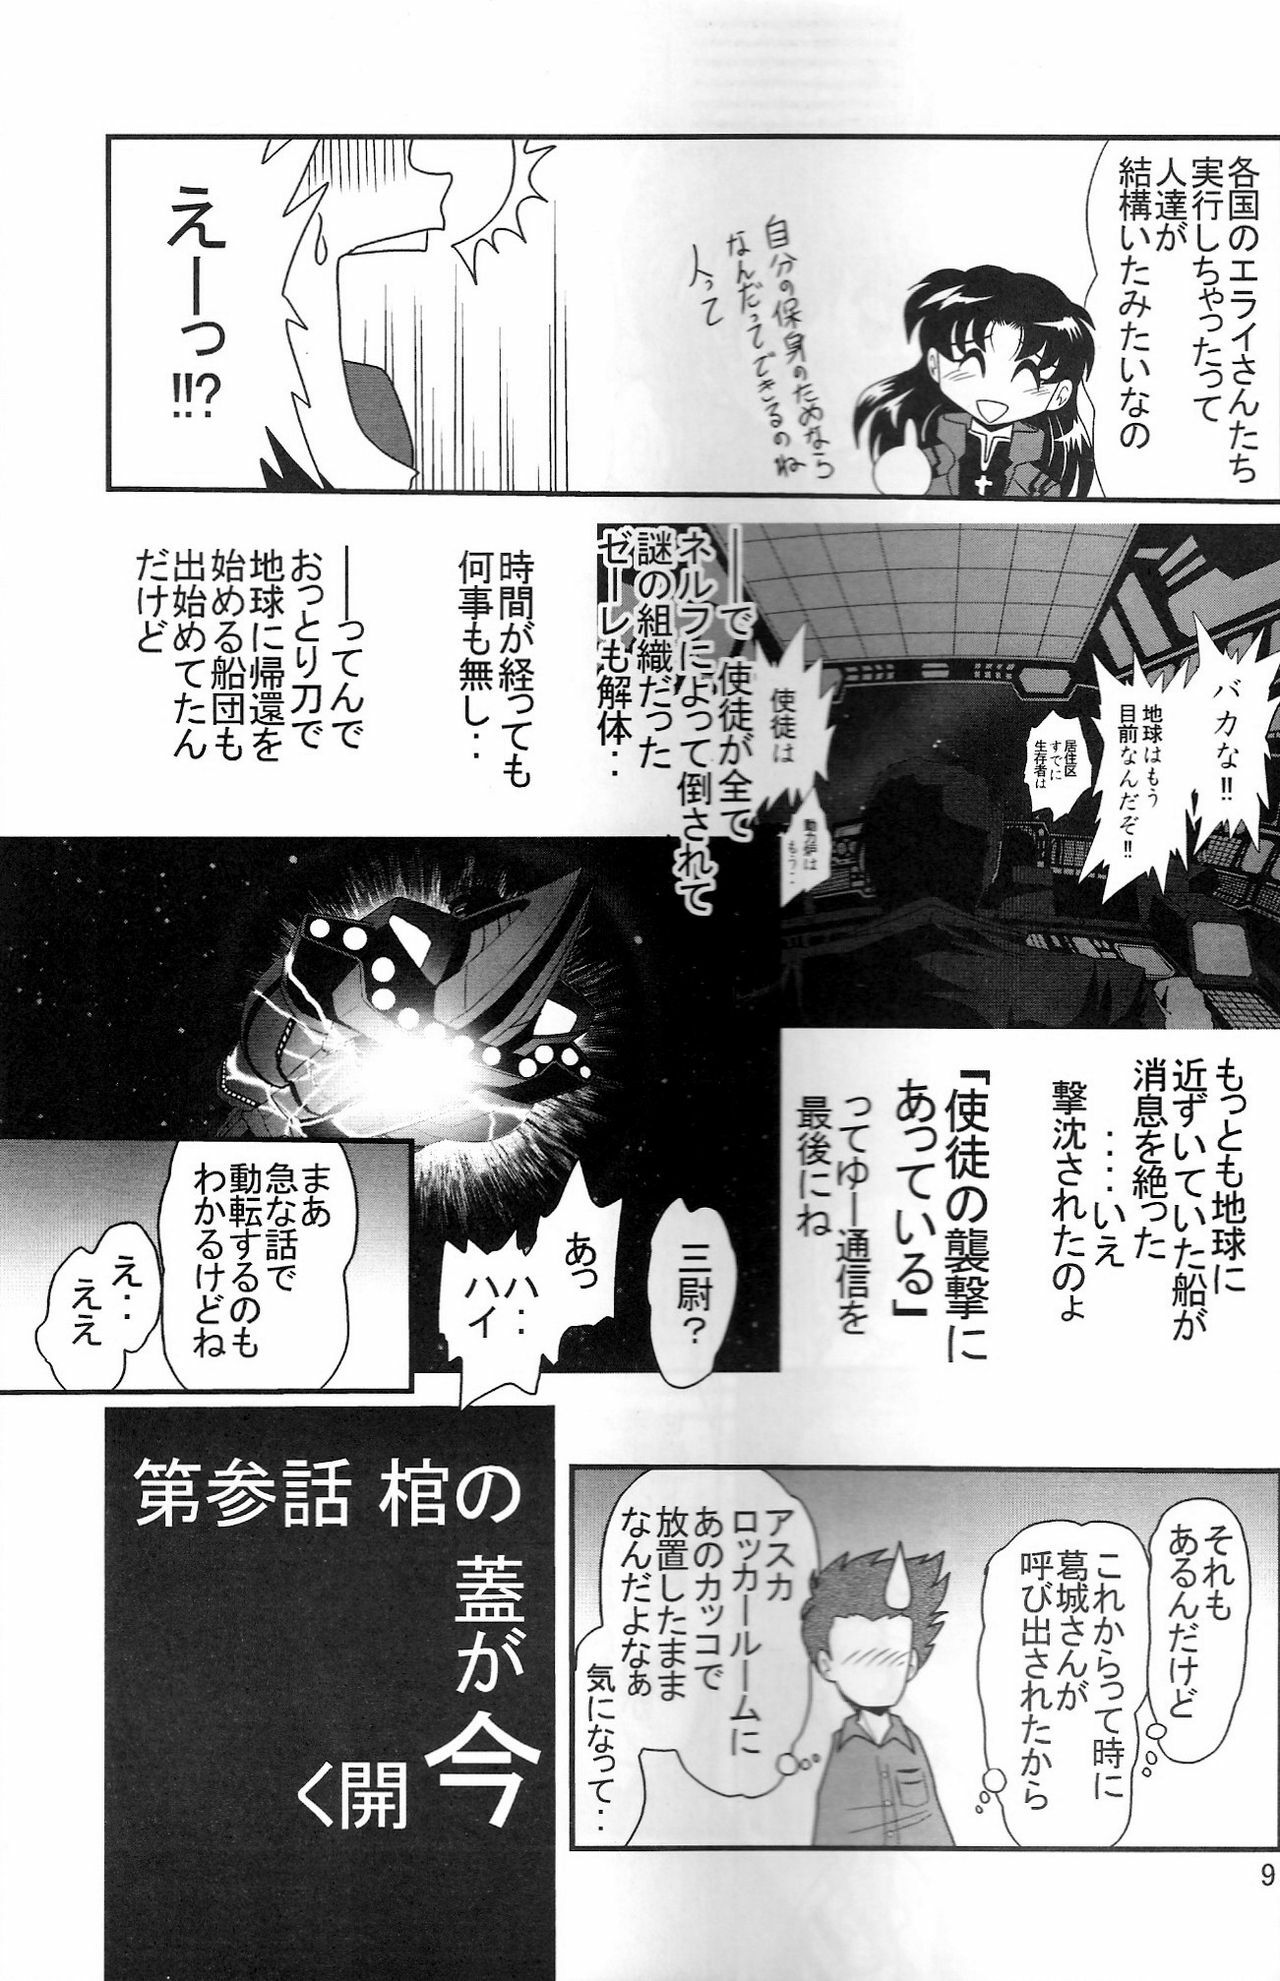 (COMIC1) [Thirty Saver Street 2D Shooting (Maki Hideto, Sawara Kazumitsu, Yonige-ya No Kyou)] Second Uchuu Keikaku 2 (Neon Genesis Evangelion) page 9 full